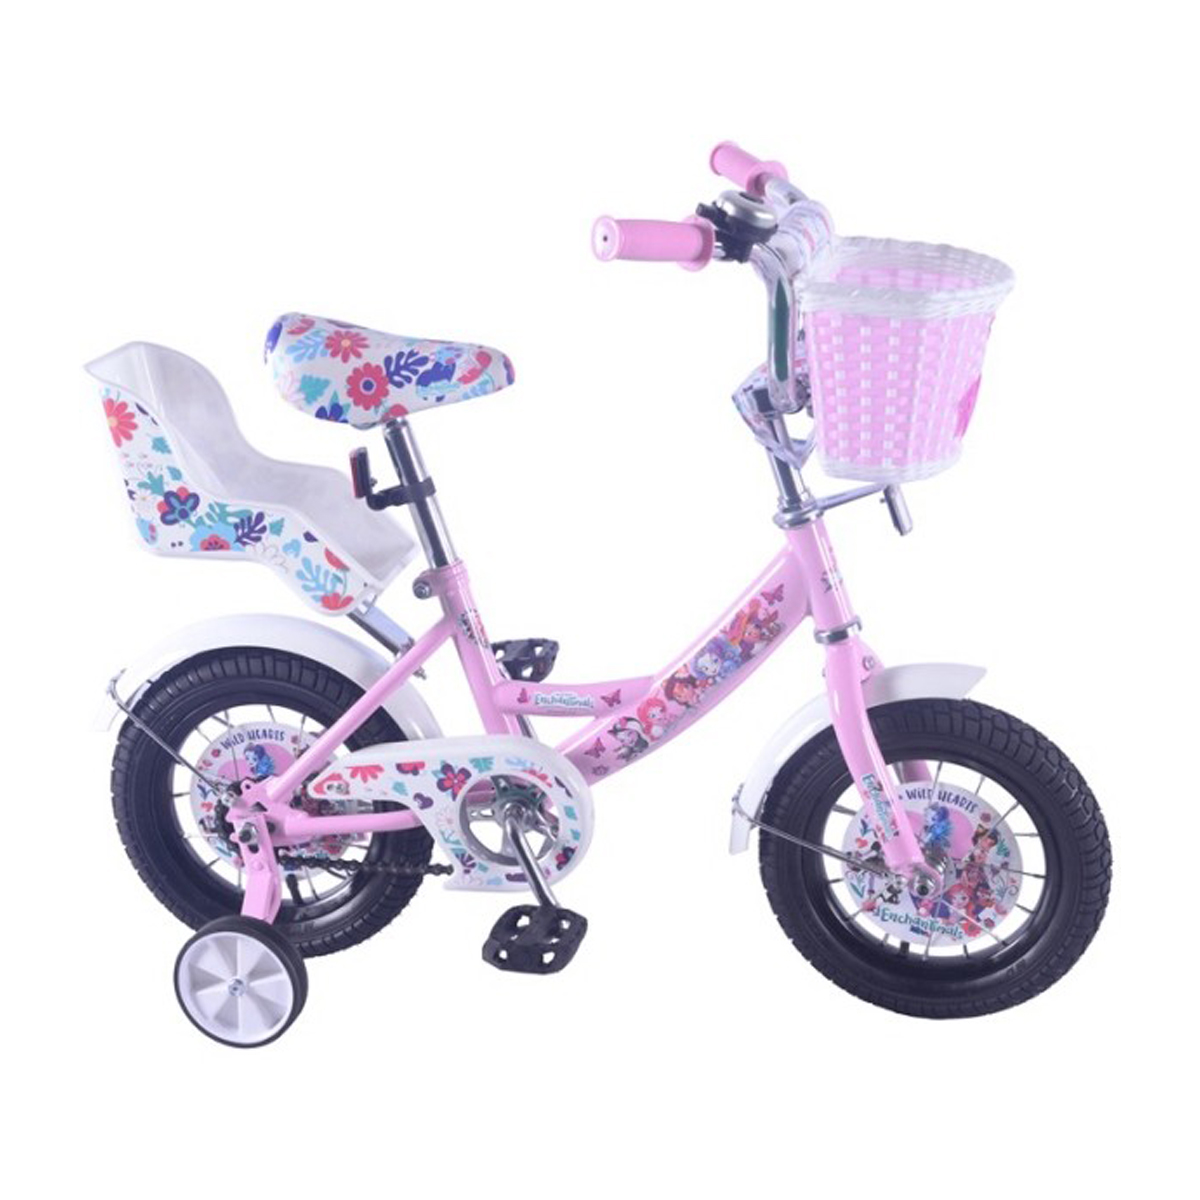 Велосипед розовый 14. Велосипед 12" Enchantimals а-Тип страховочные колеса, бело-розовый. Велосипед дет. 12" Mustang а-Тип,белый/фиолетовый st12001-а 239491. Велосипед Enchantimals 12. Велосипед Enchantimals 14.